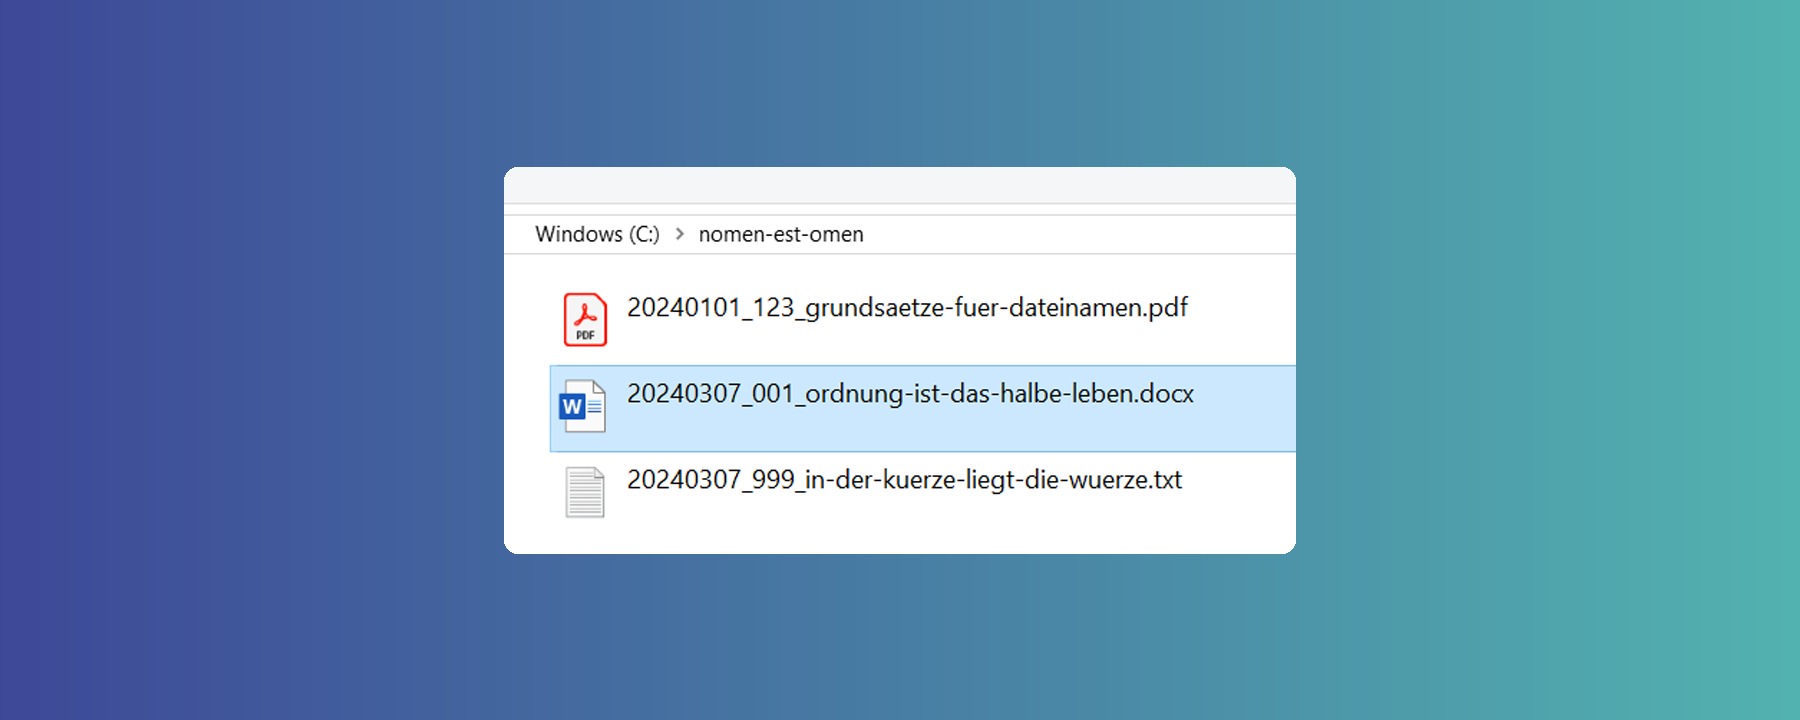 Header-Bild mit Screenshot aus Windows Explorer zum Thema Dateinamen